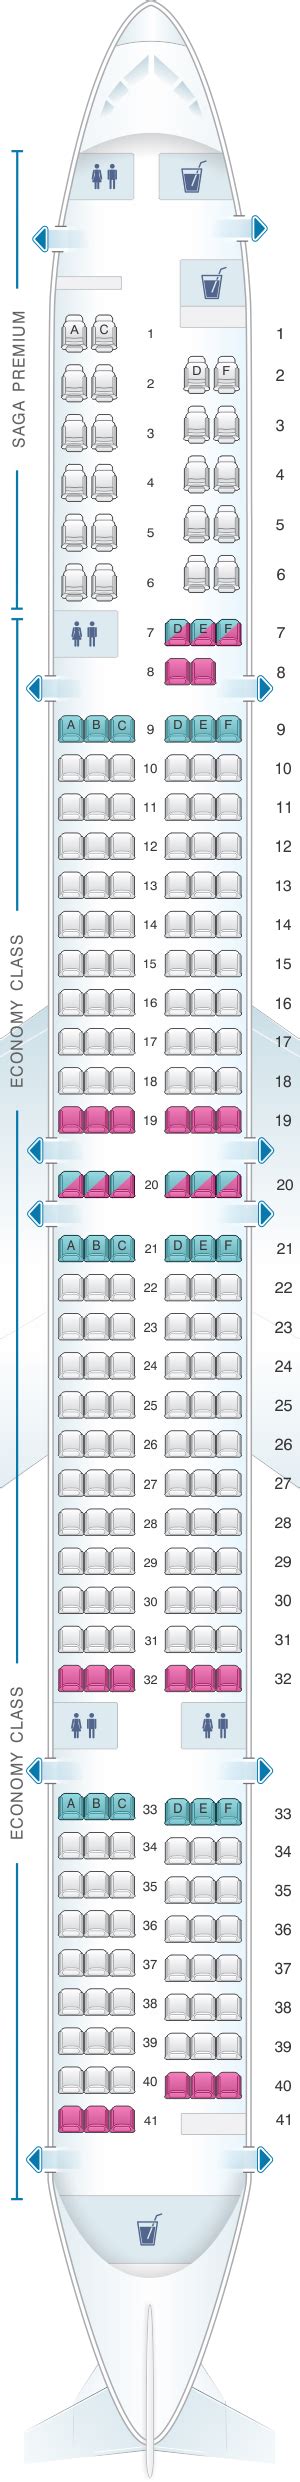 Icelandair 757 300 Seat Map Elcho Table